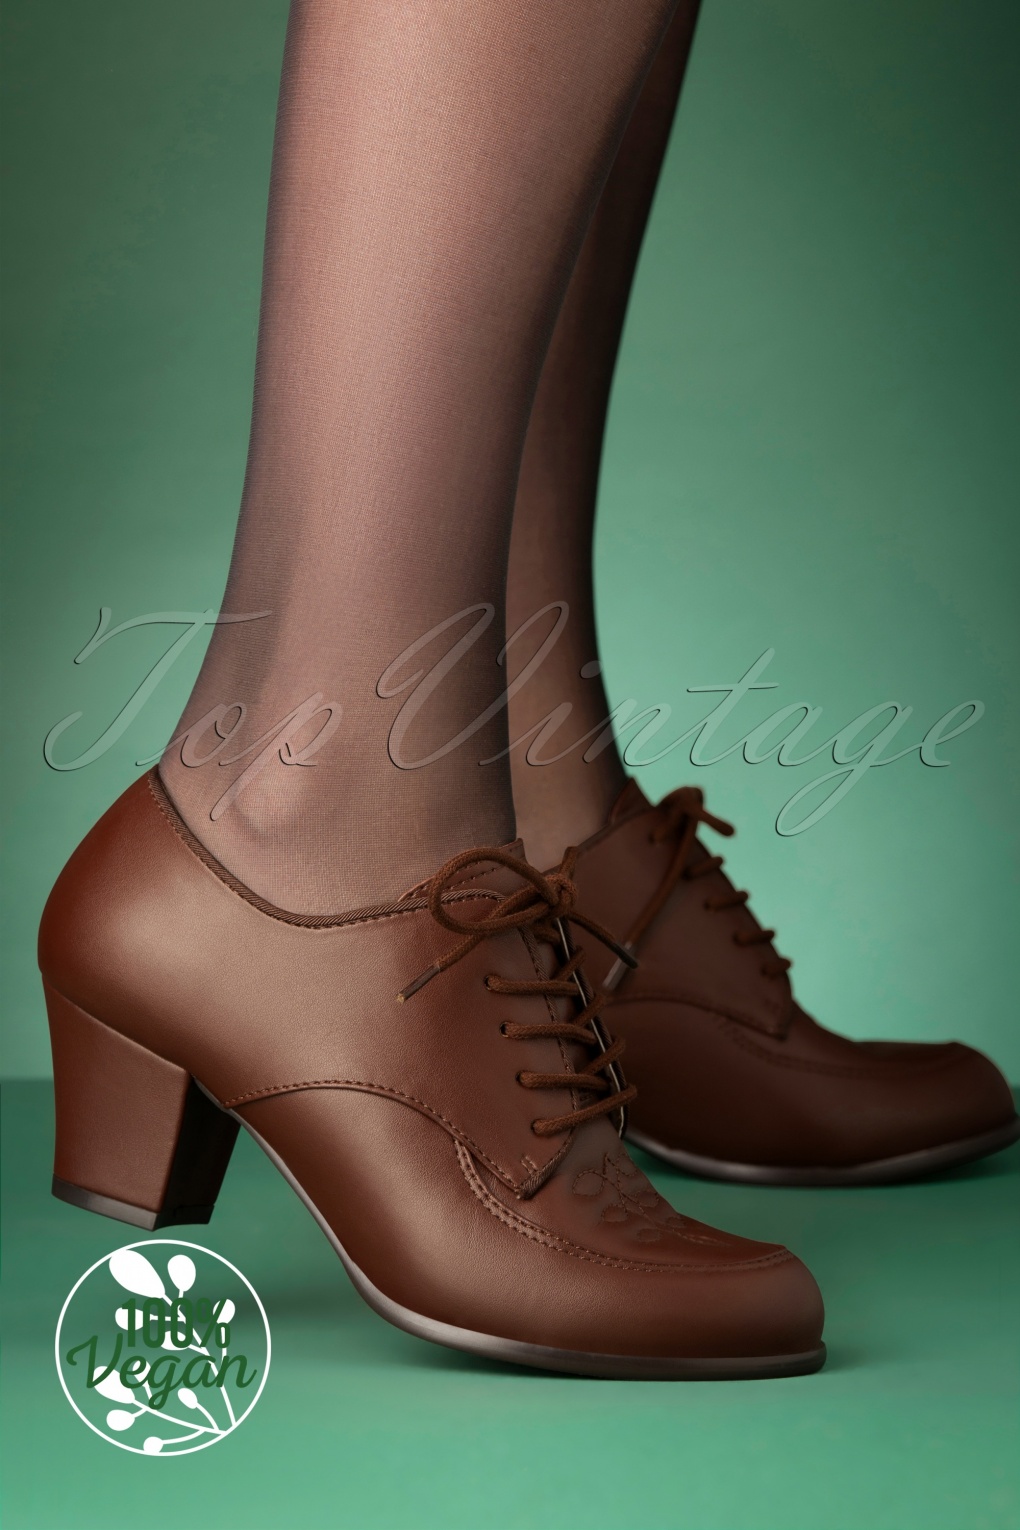 194s vintage shoes